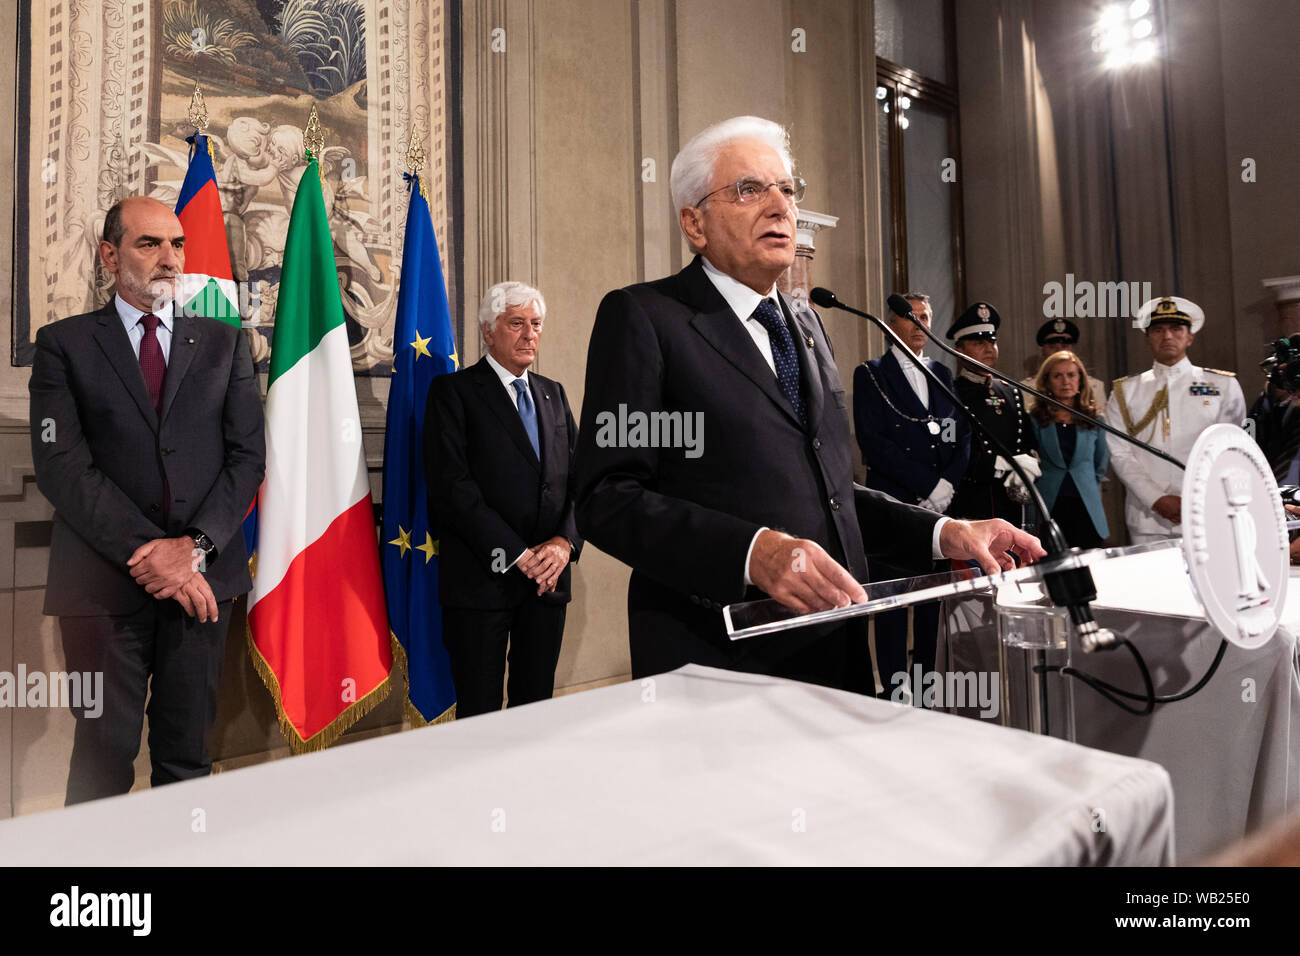 Le président italien Sergio Mattarella parle aux médias après une réunion avec les partis politiques sur la deuxième journée de consultations pour la formation du nouveau gouvernement au palais du Quirinal. Banque D'Images